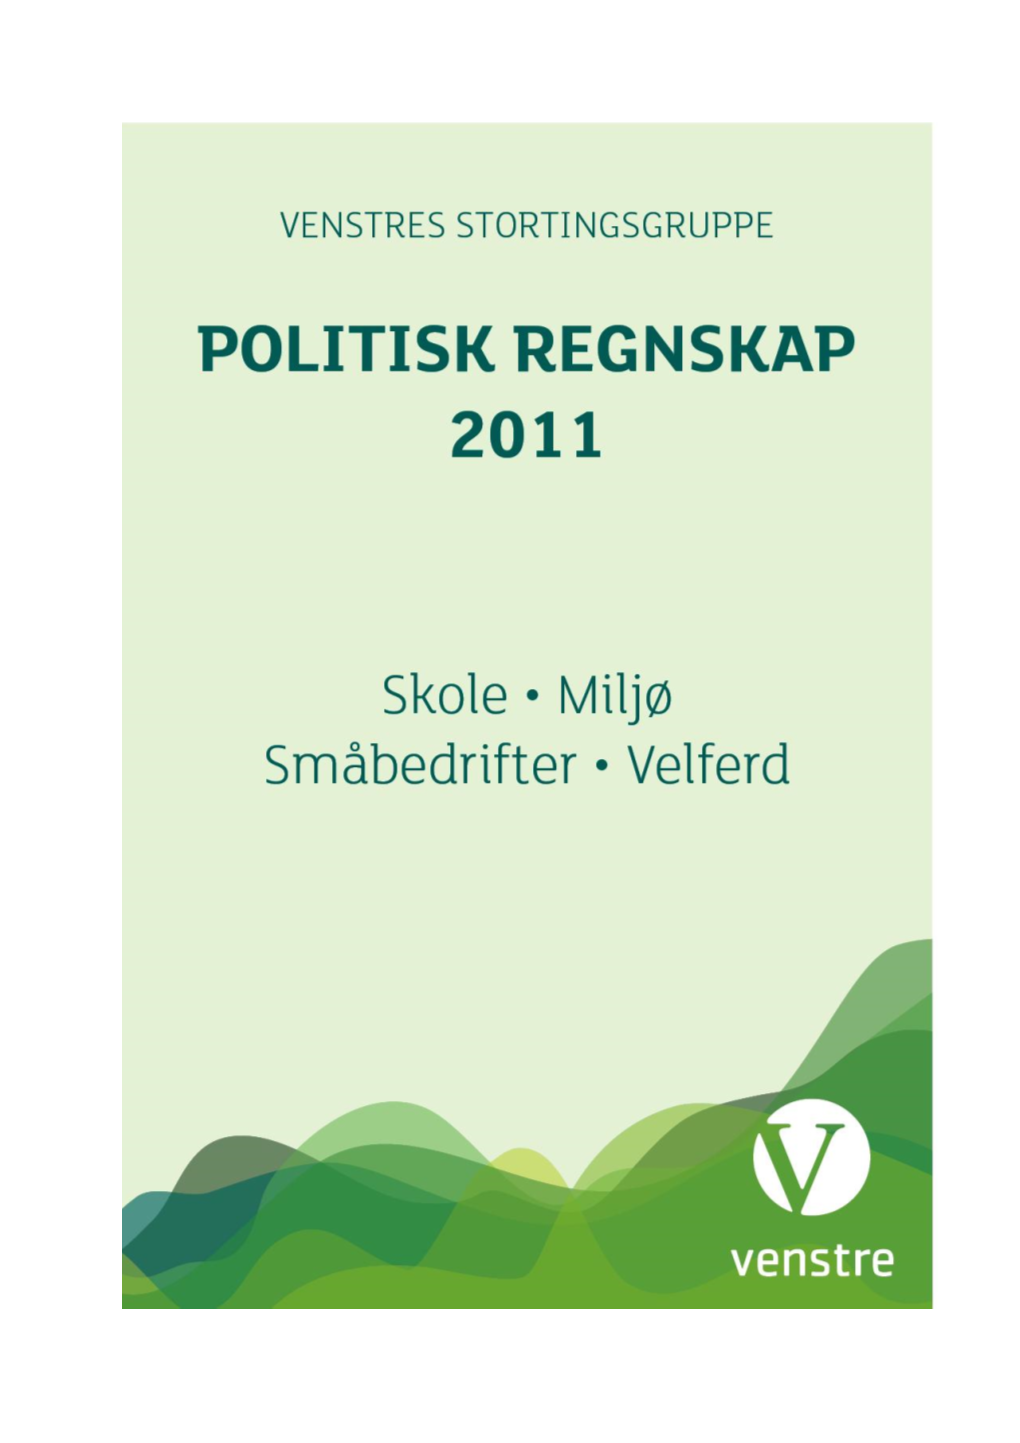 Politisk Regnskap for 2011